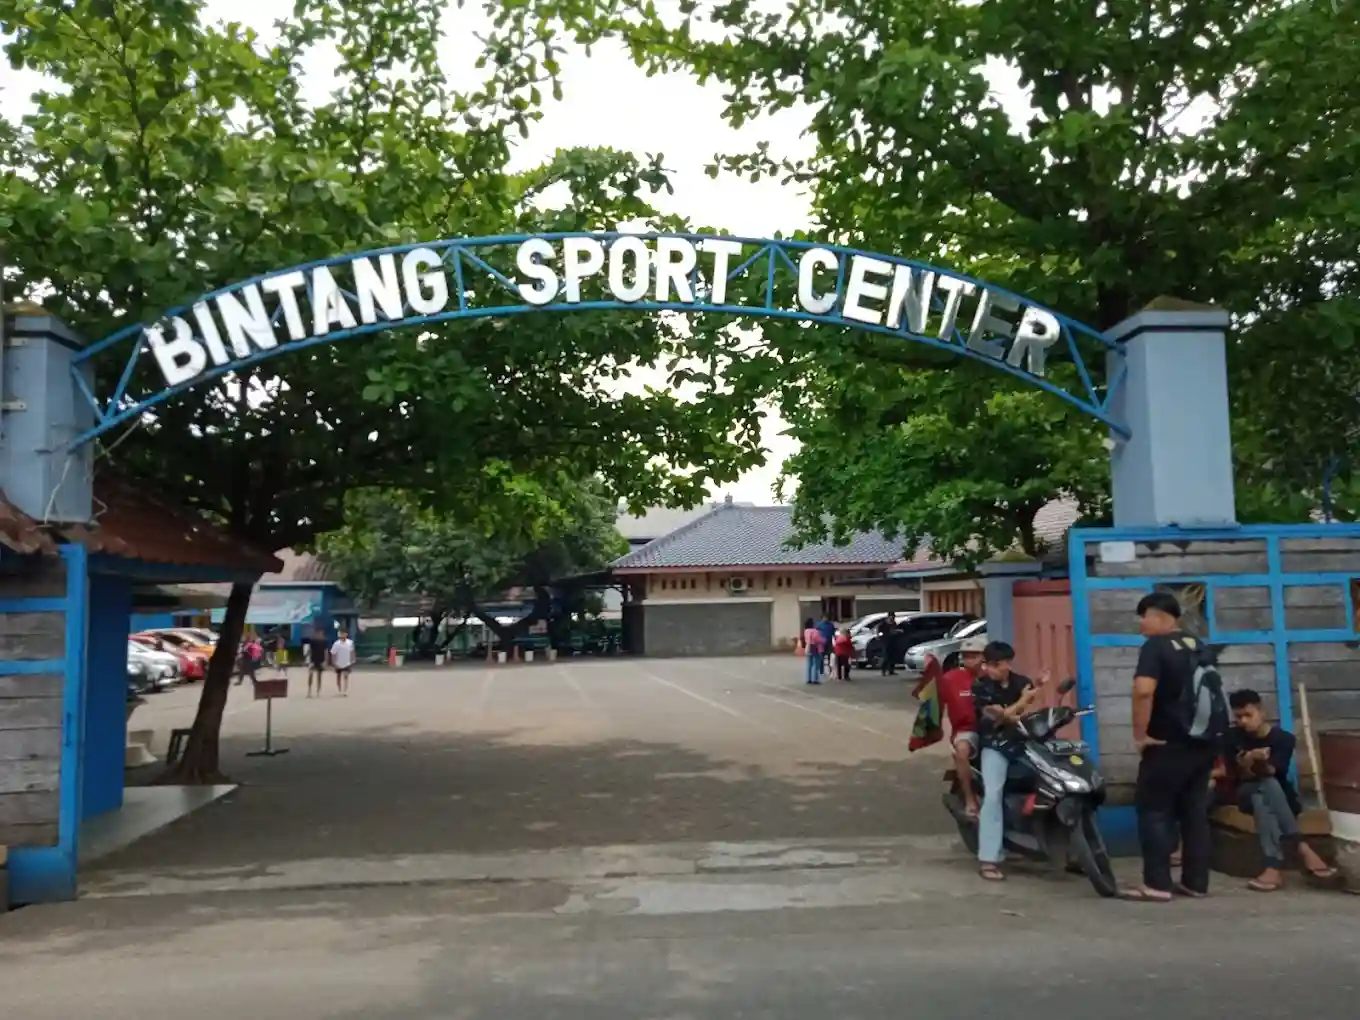 Tips Liburan ke Kolam Renang Bintang Sport Center